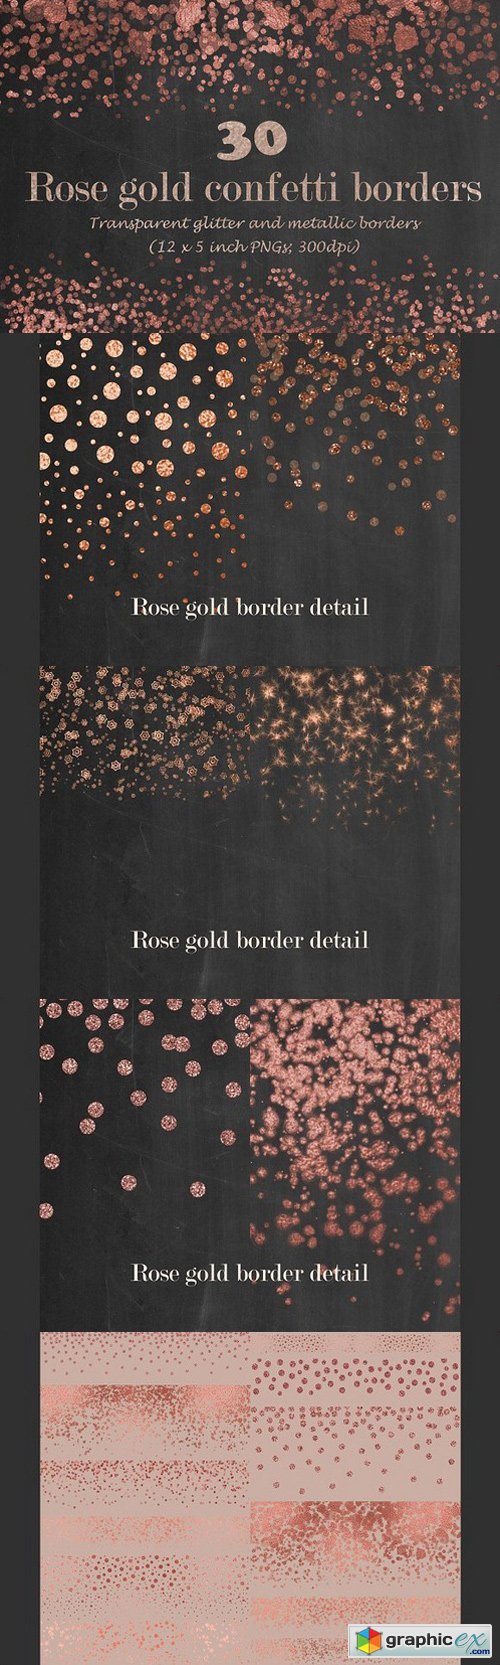 Rose gold confetti borders